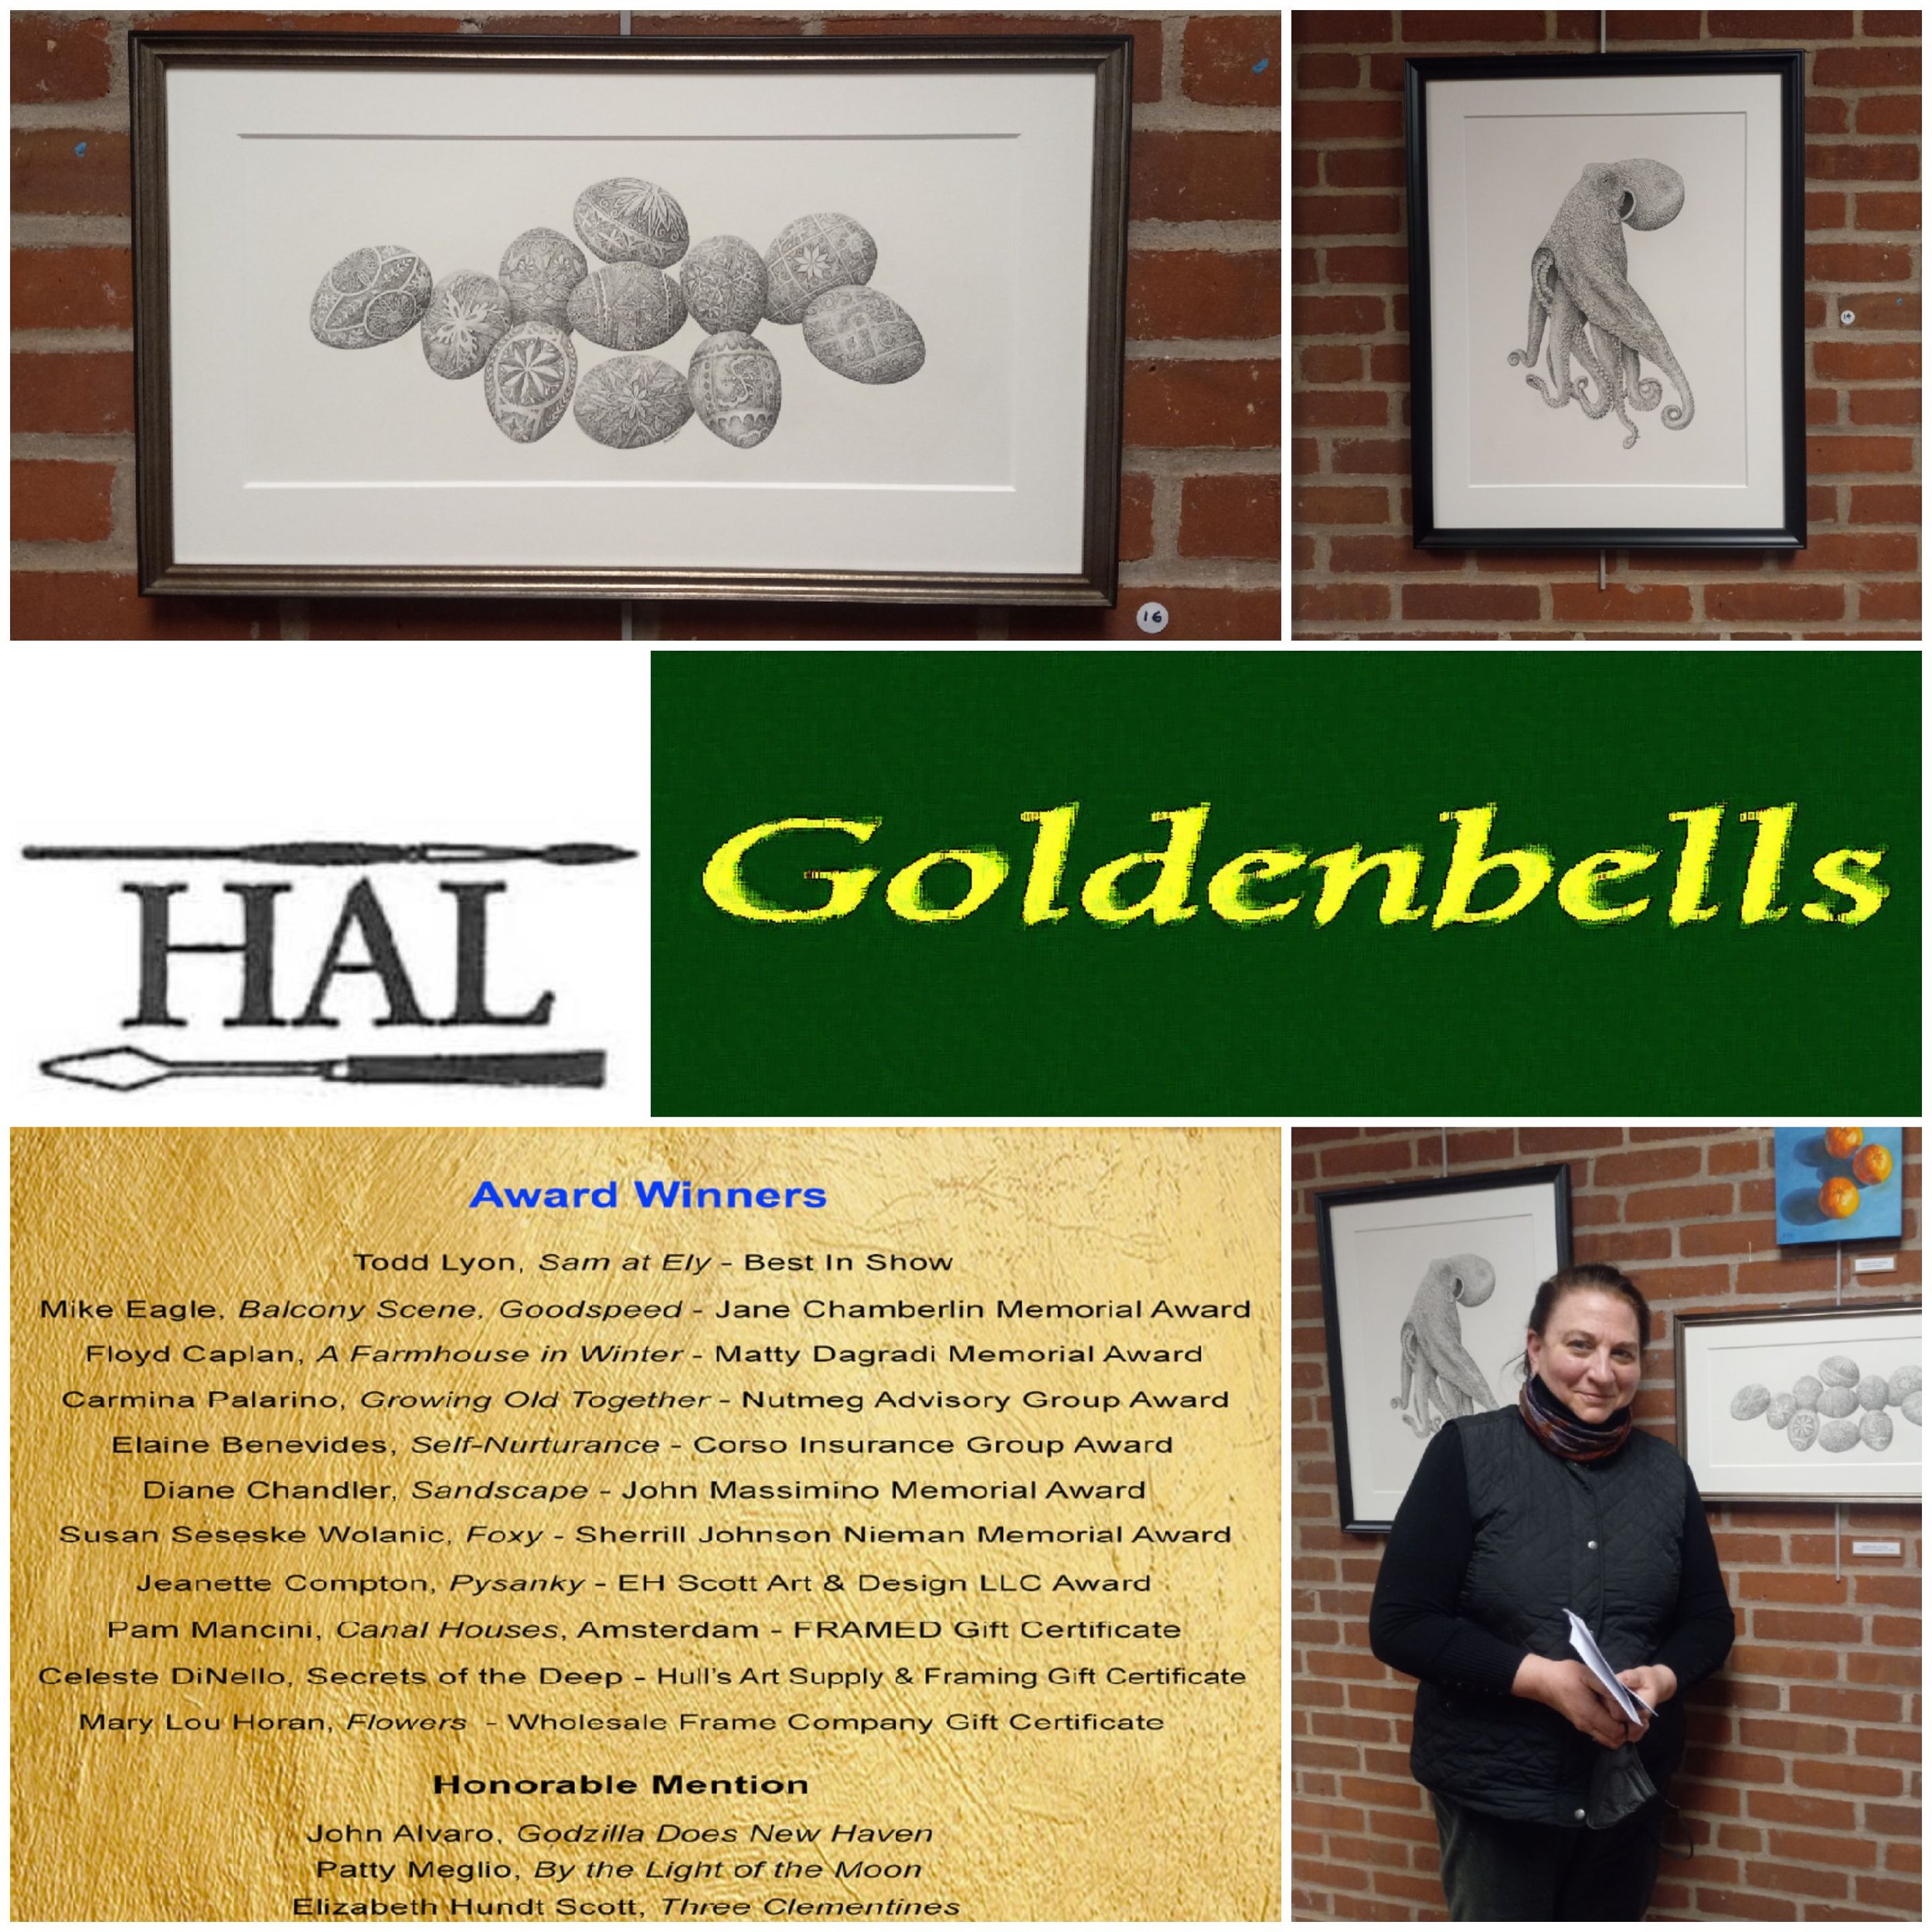  Hamden Art League Goldenbells Art Exhibit, April 5th, 2022